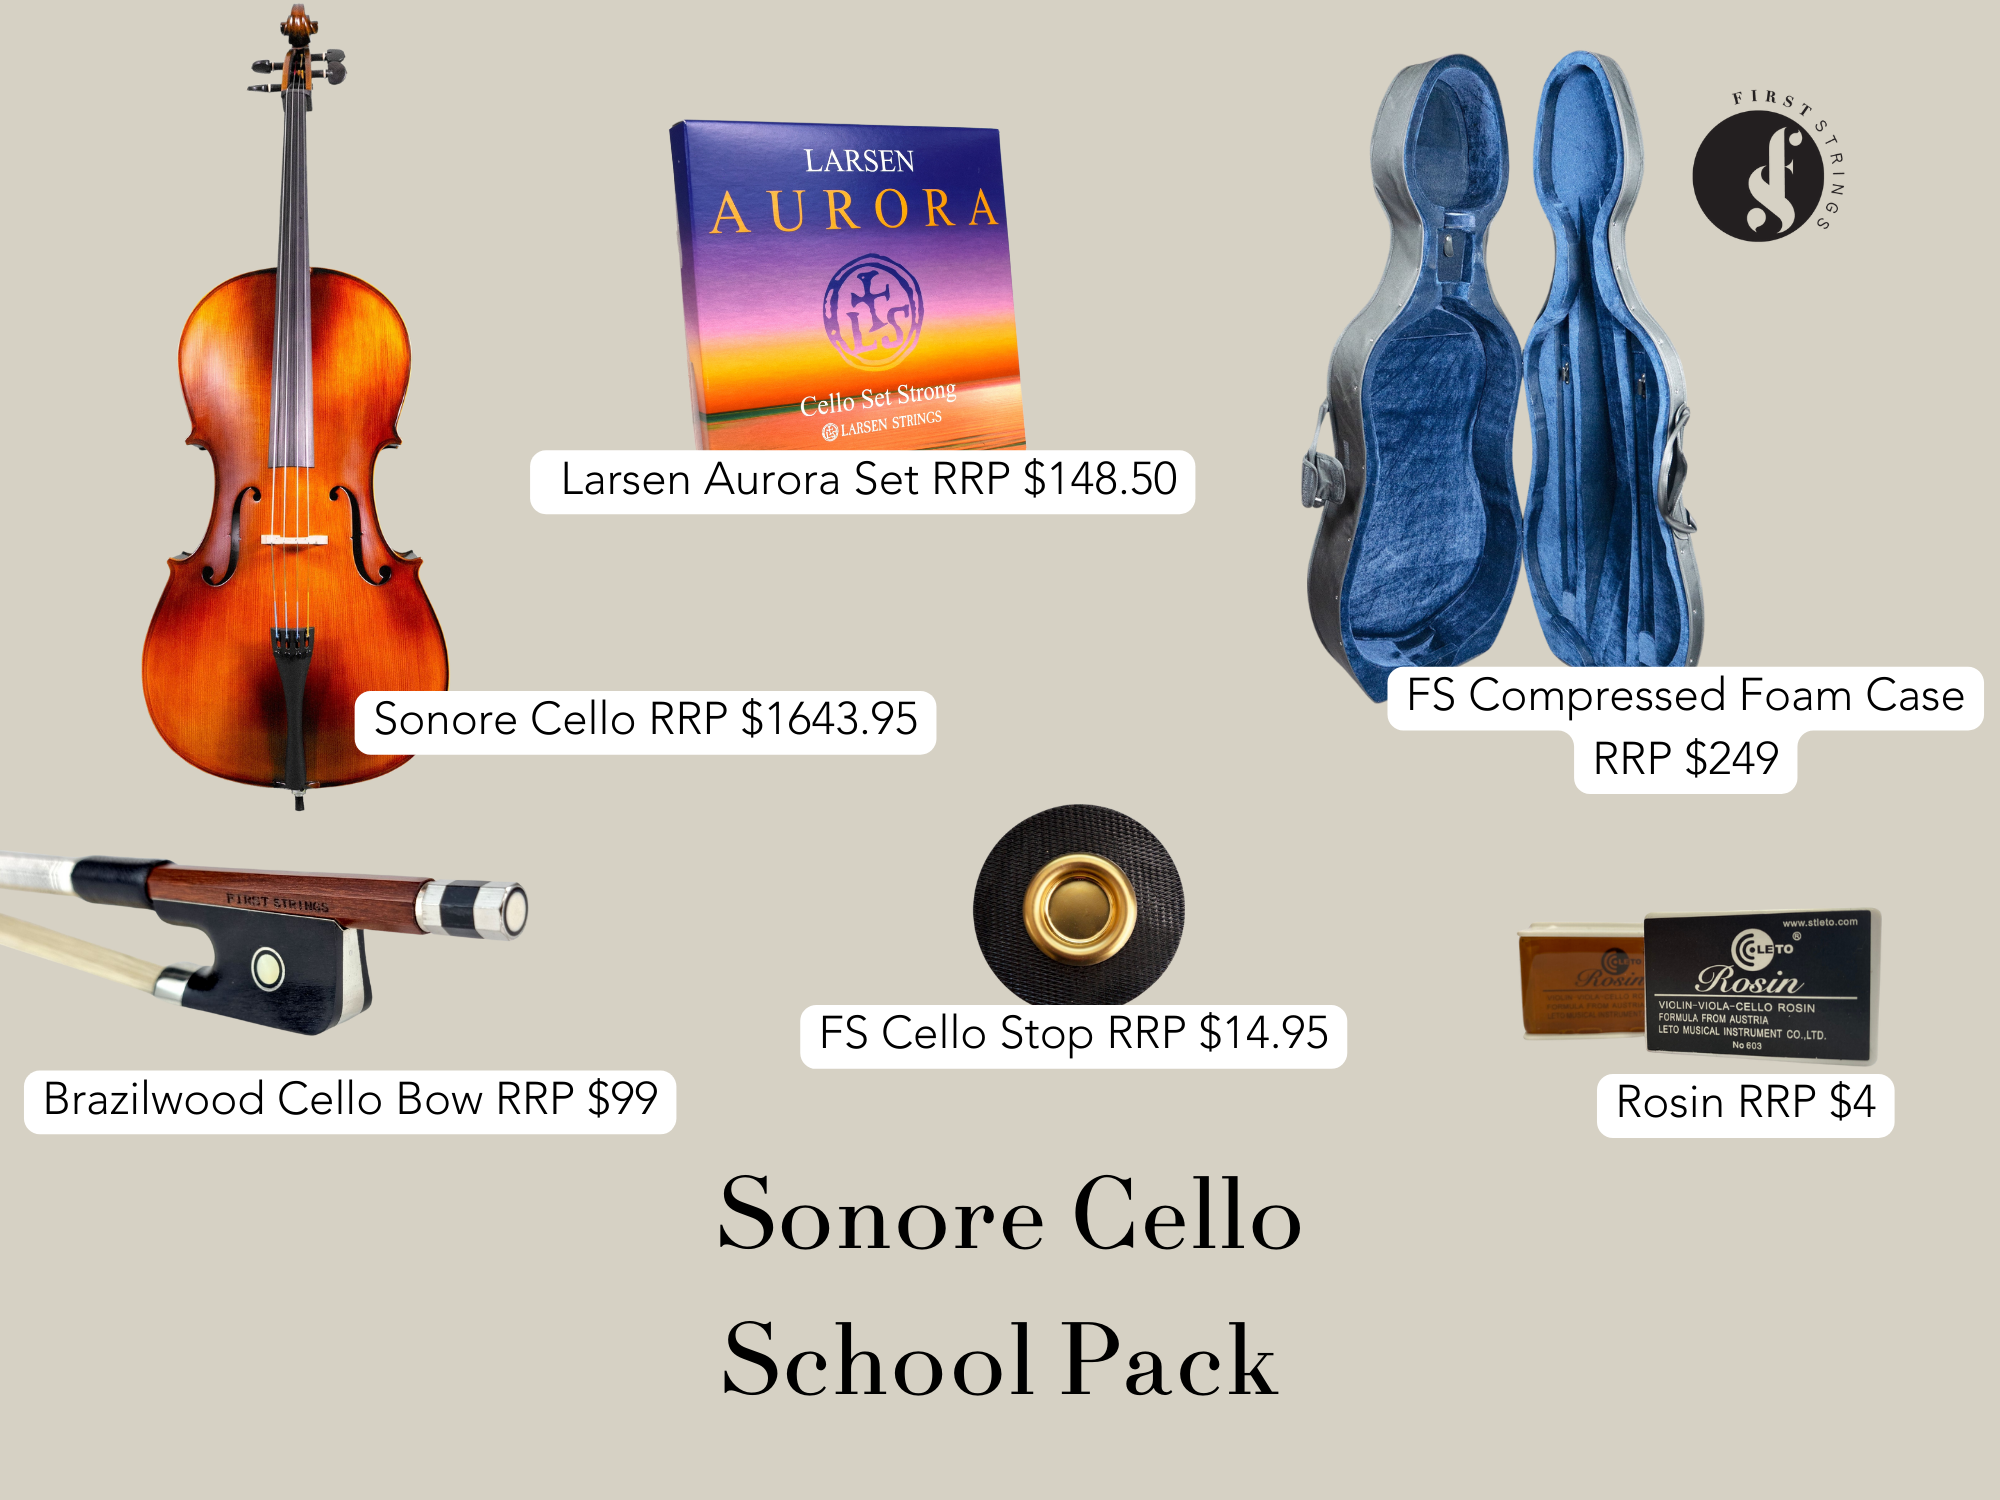 Sonore Cello School Pack